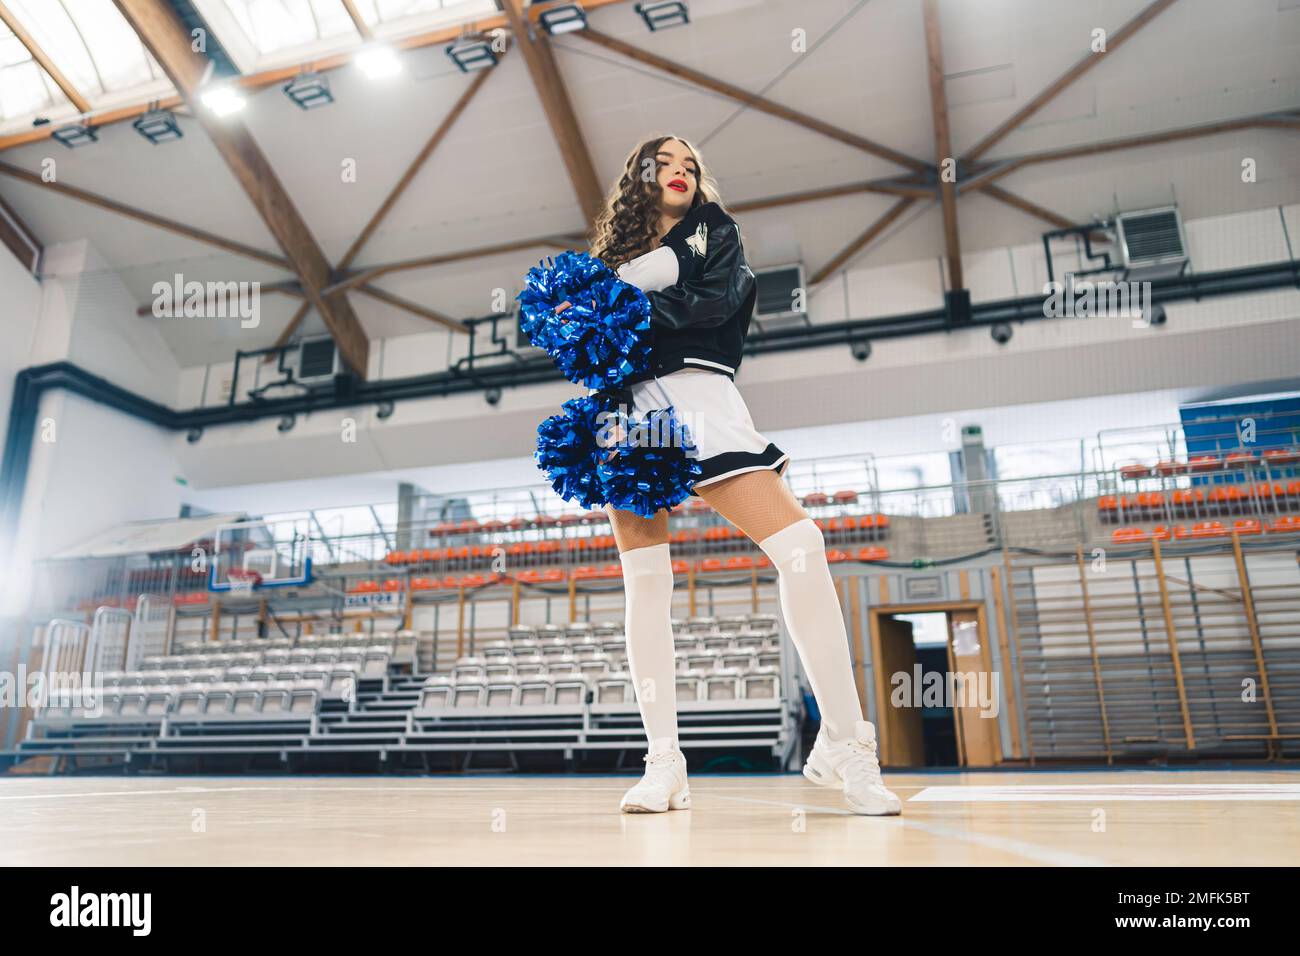 Horizontale Aufnahme der braunen Cheerleaderin in Schwarz-Weiß-Uniform mit blauen, glänzenden Bommeln von unten. Basketballfeld im Hintergrund. Hochwertiges Foto Stockfoto